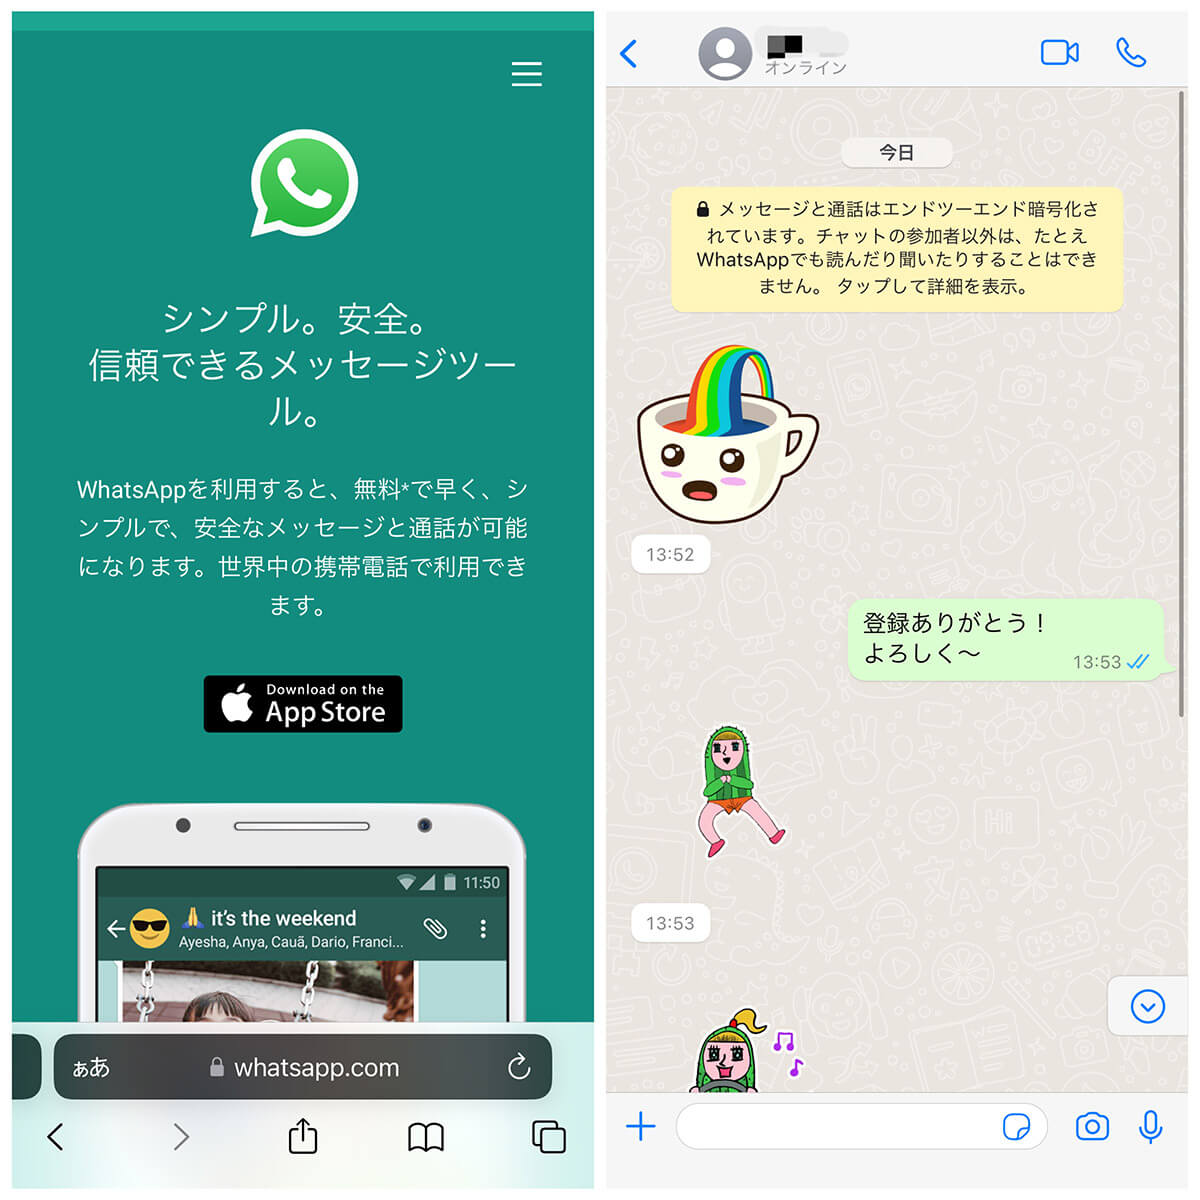 「WhatsApp」の使い方とLINEとの違い | 登録方法～主な機能まで解説2